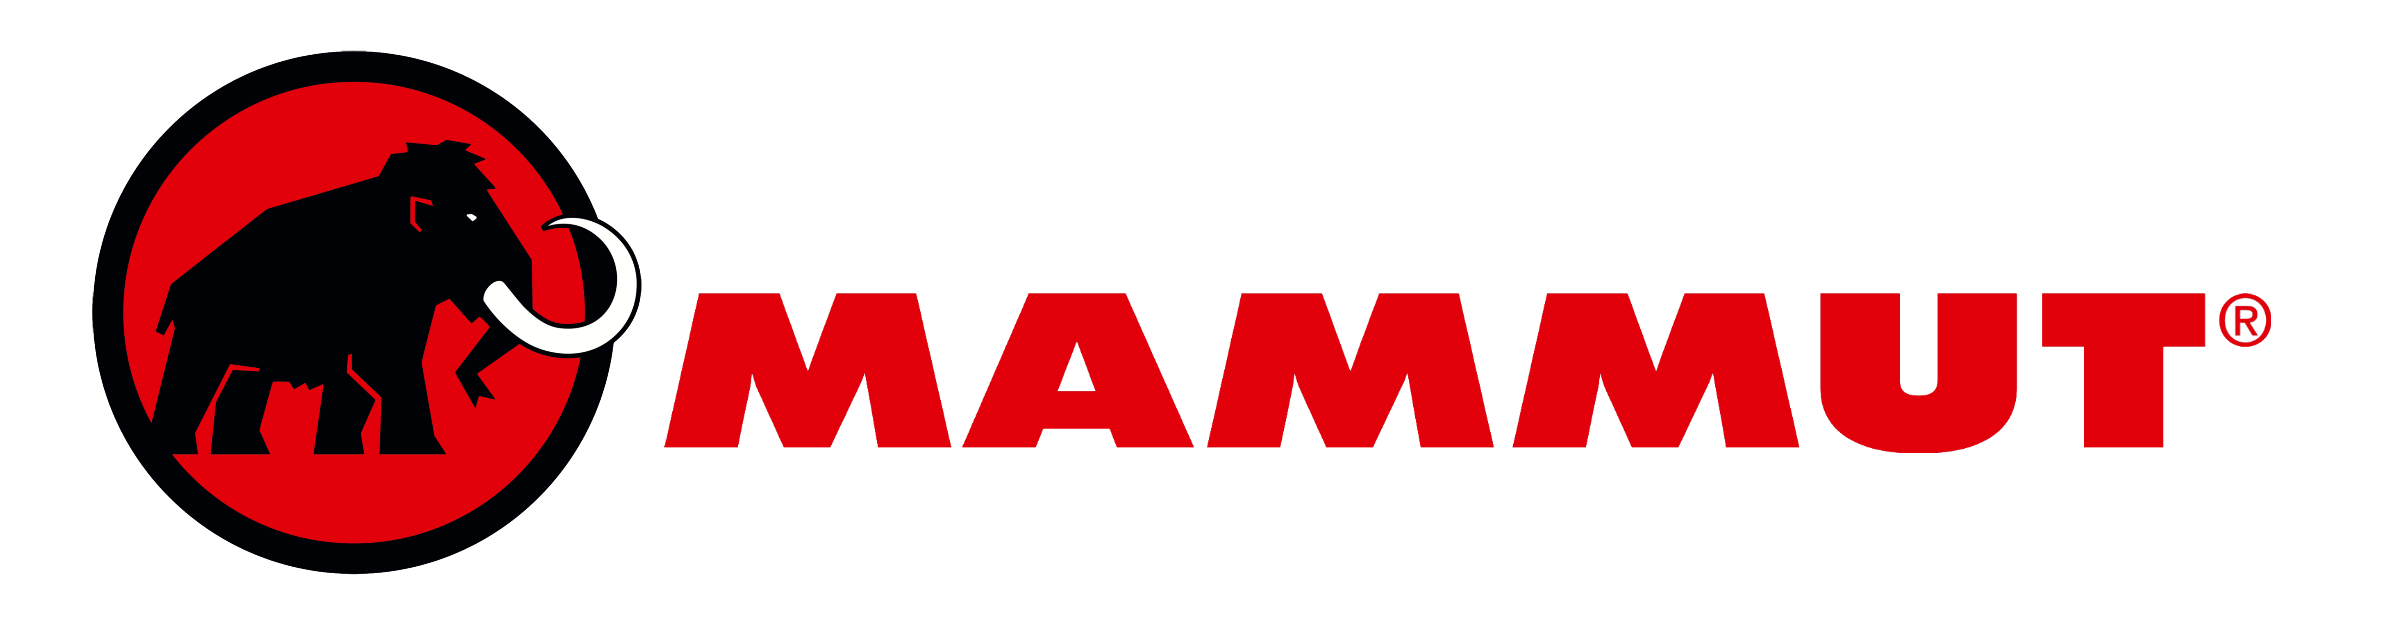 Логотип Mammut (Маммут)